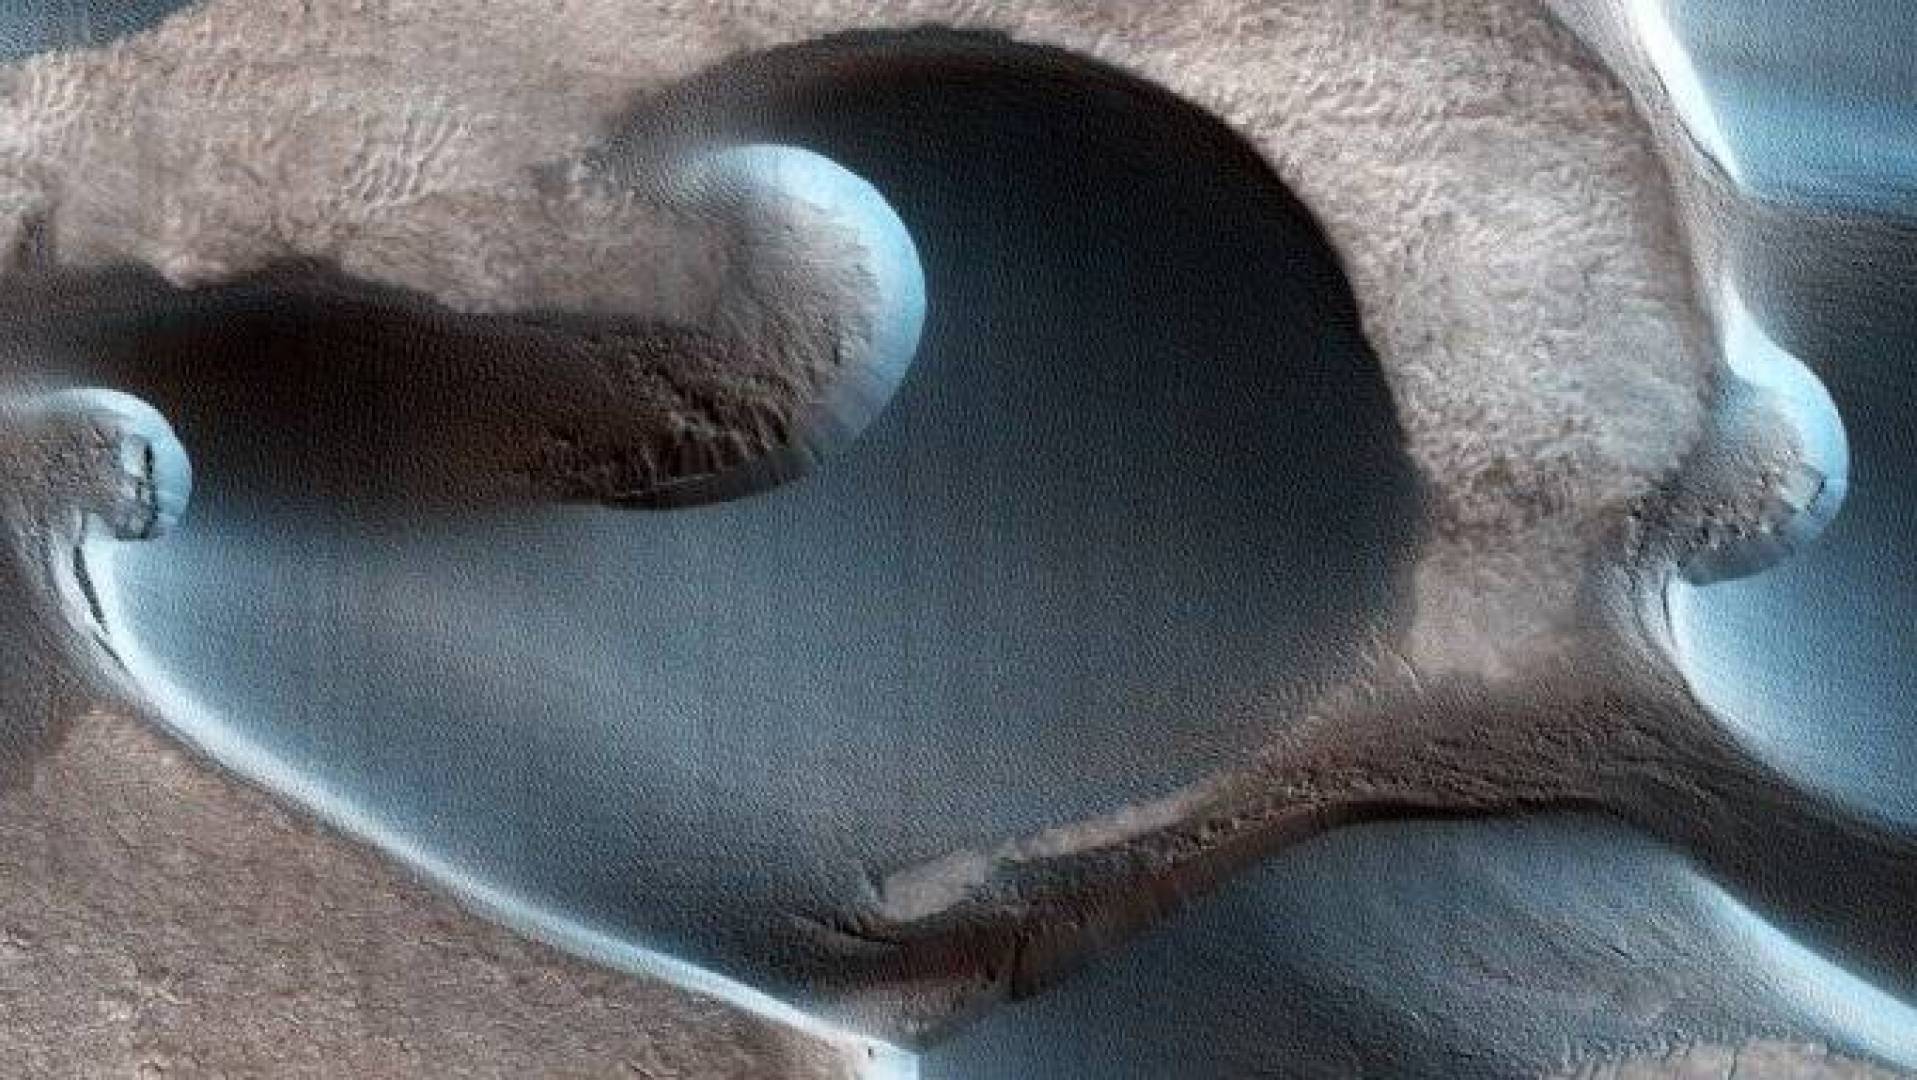 مركبة ناسا ترصد كثبانا رملية هلالية على سطح المريخ